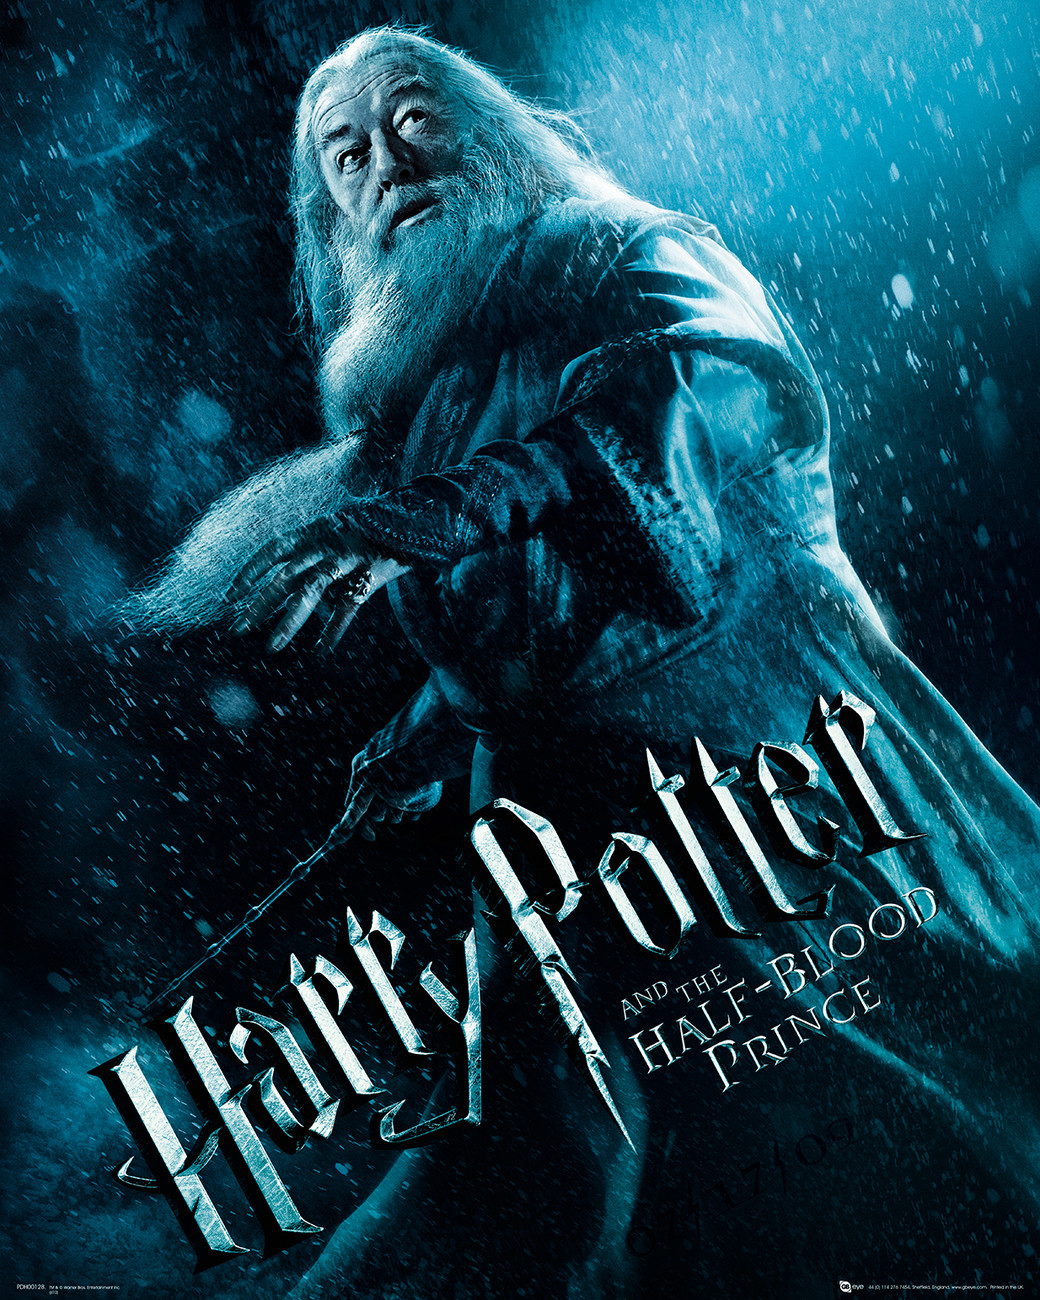 Stampe d'arte Harry Potter e il principe mezzosangue - Albus Silente